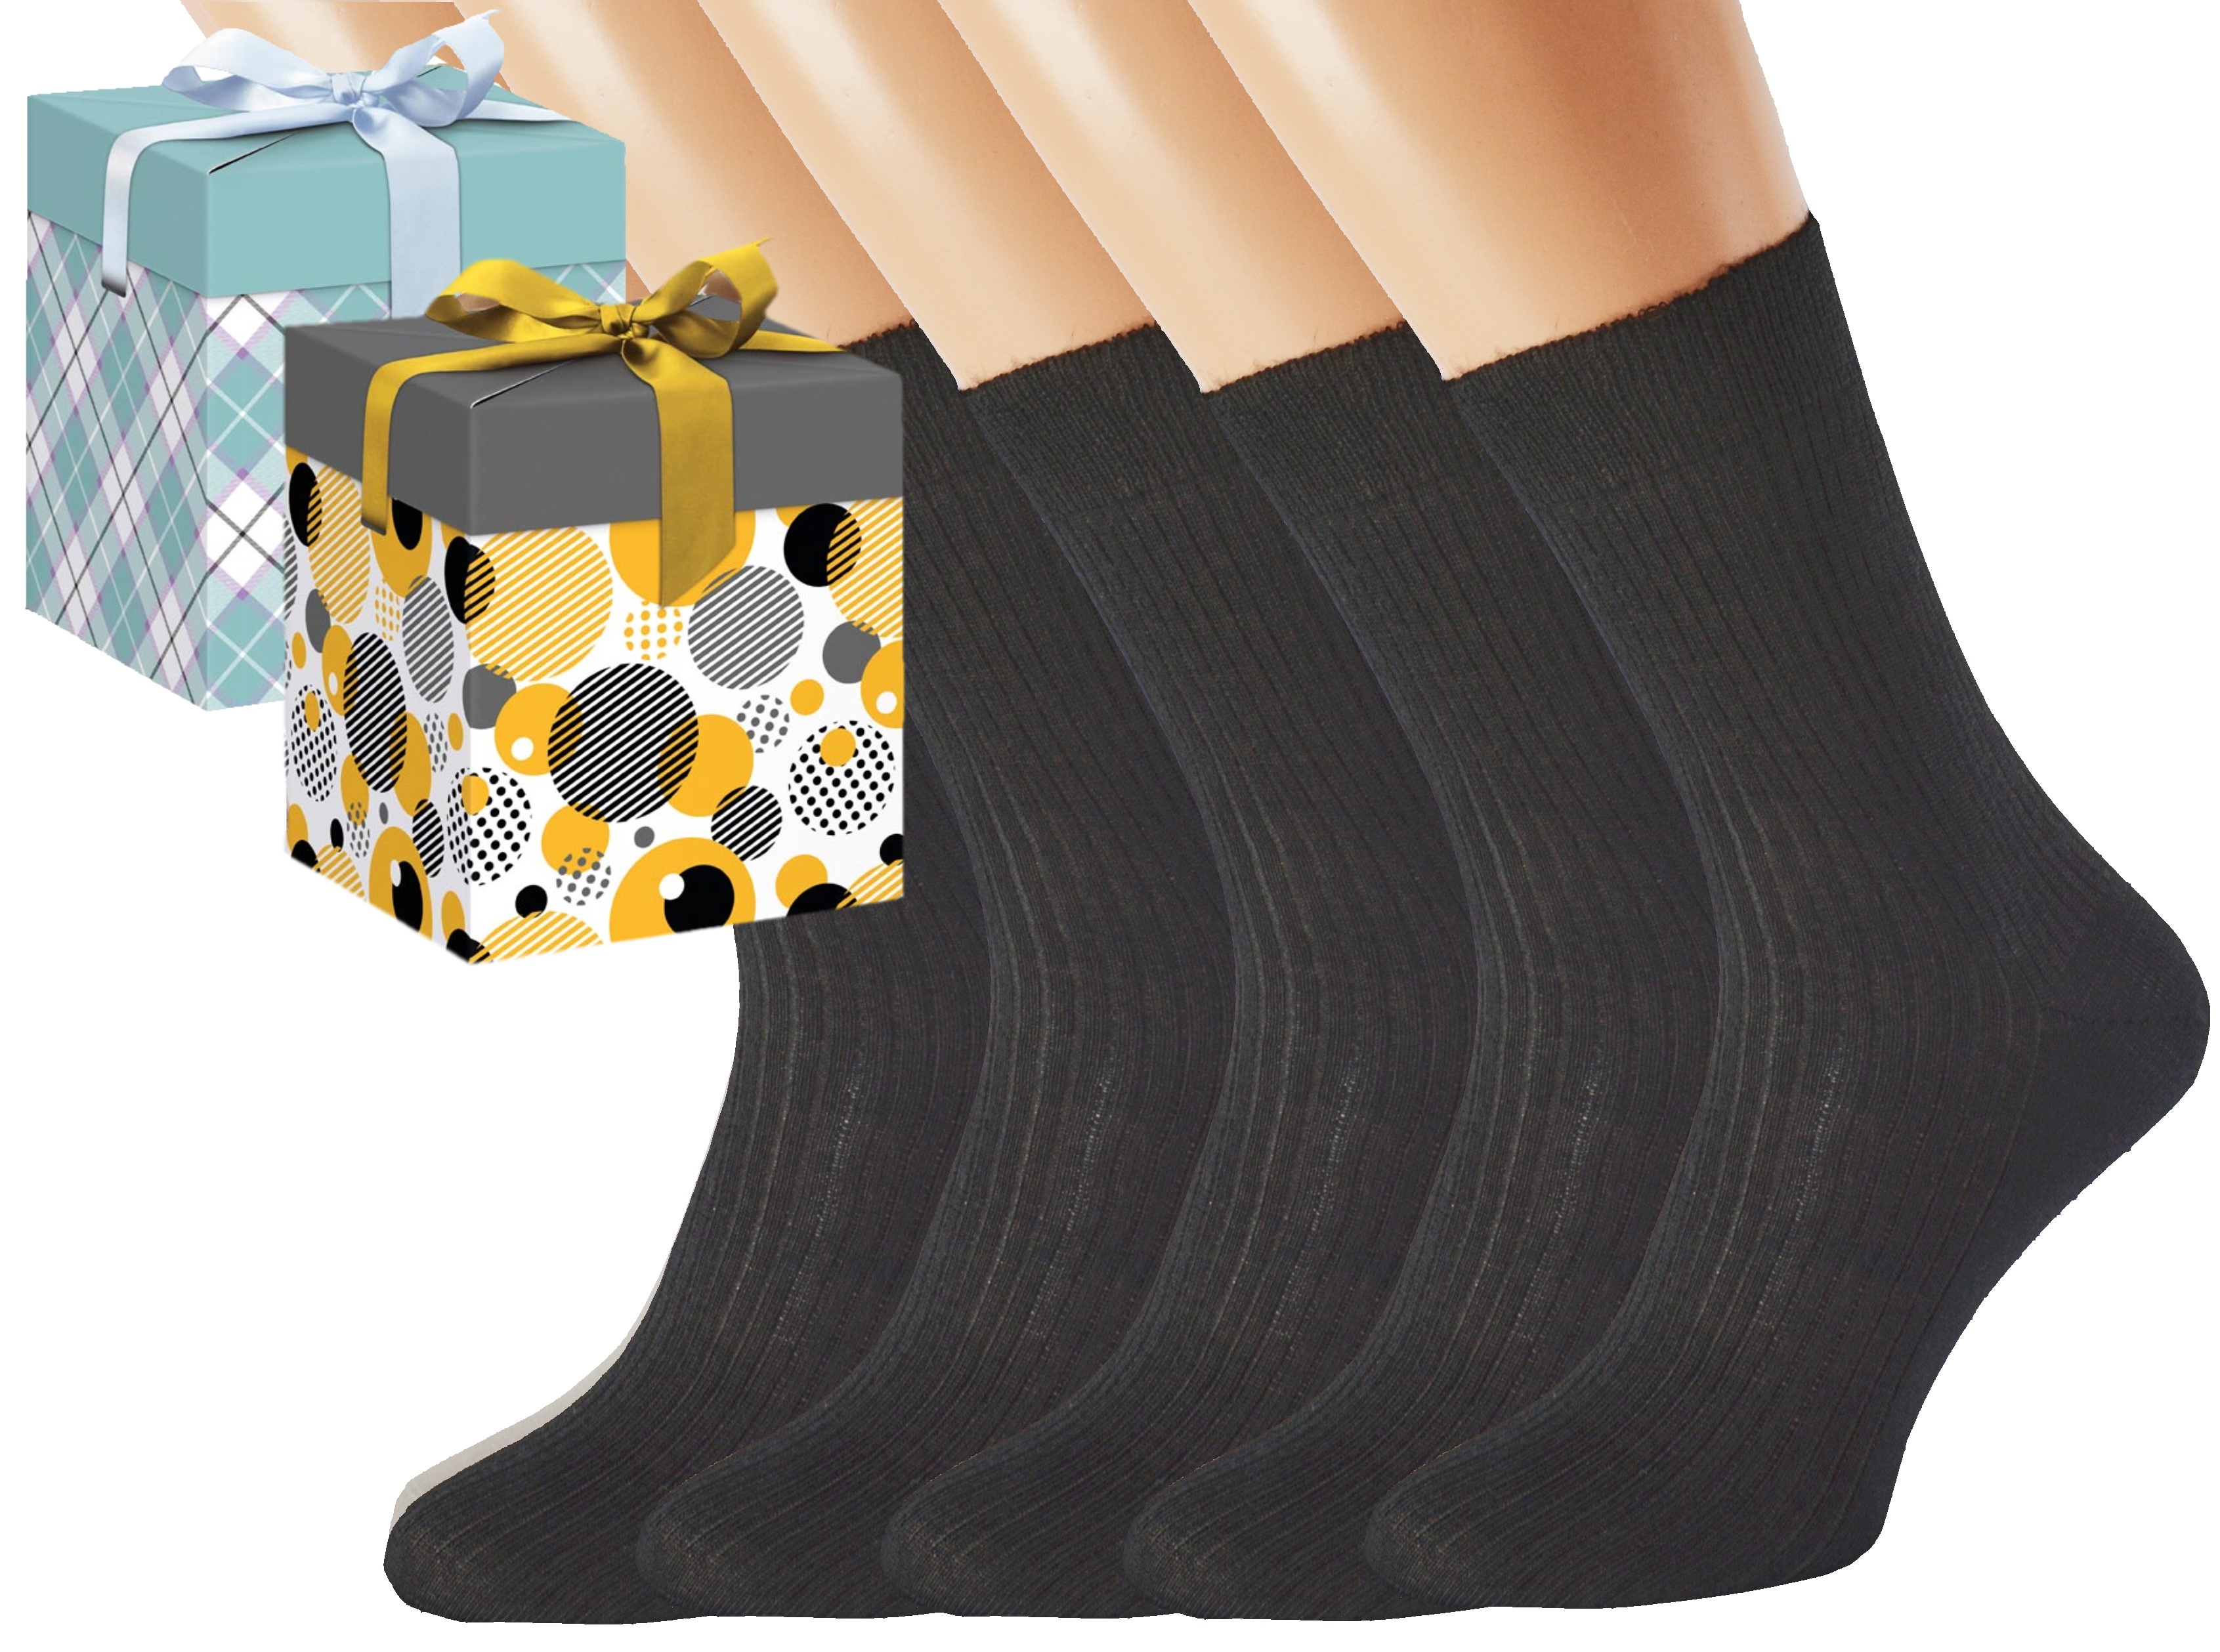 Dárkové balení 5 párů zdravotních ponožek LUKÁŠ Barva: Černé, Velikost: EUR 36-38 (UK 4-5), Zvolte variantu dárkového balení: Modrá s oky